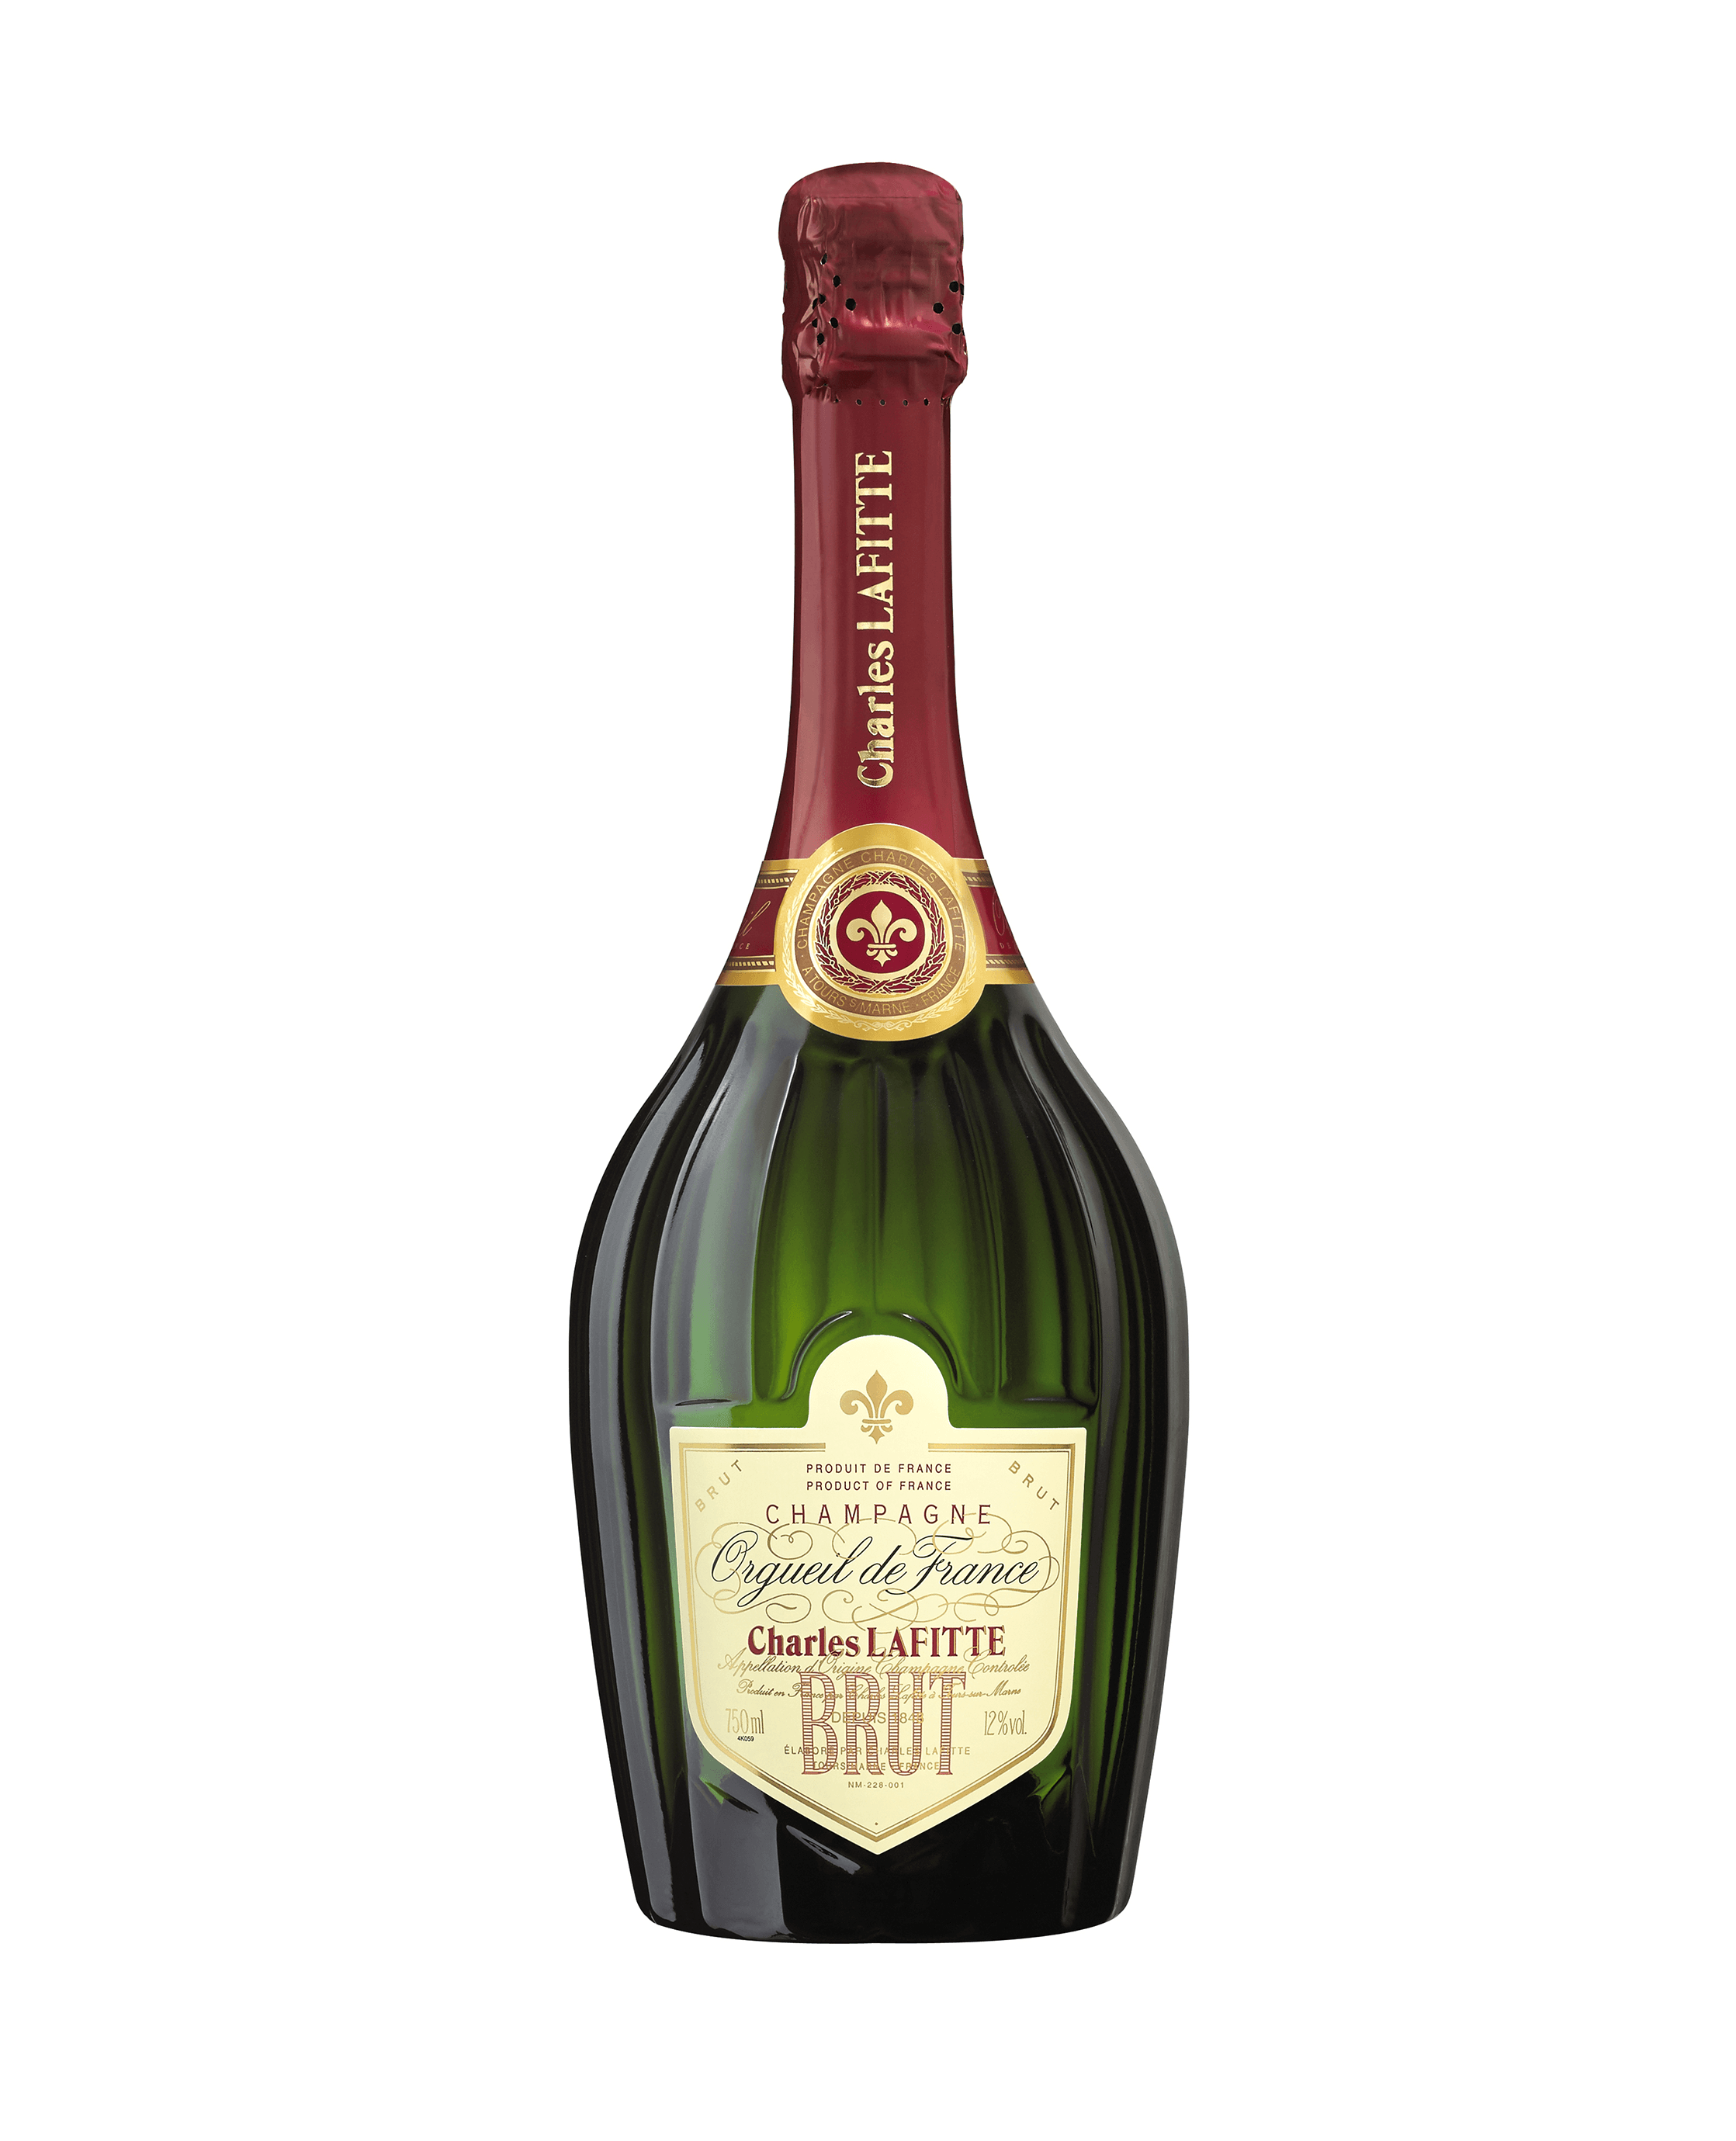 Orgueil de France - BRUT - Champagne Charles Lafitte